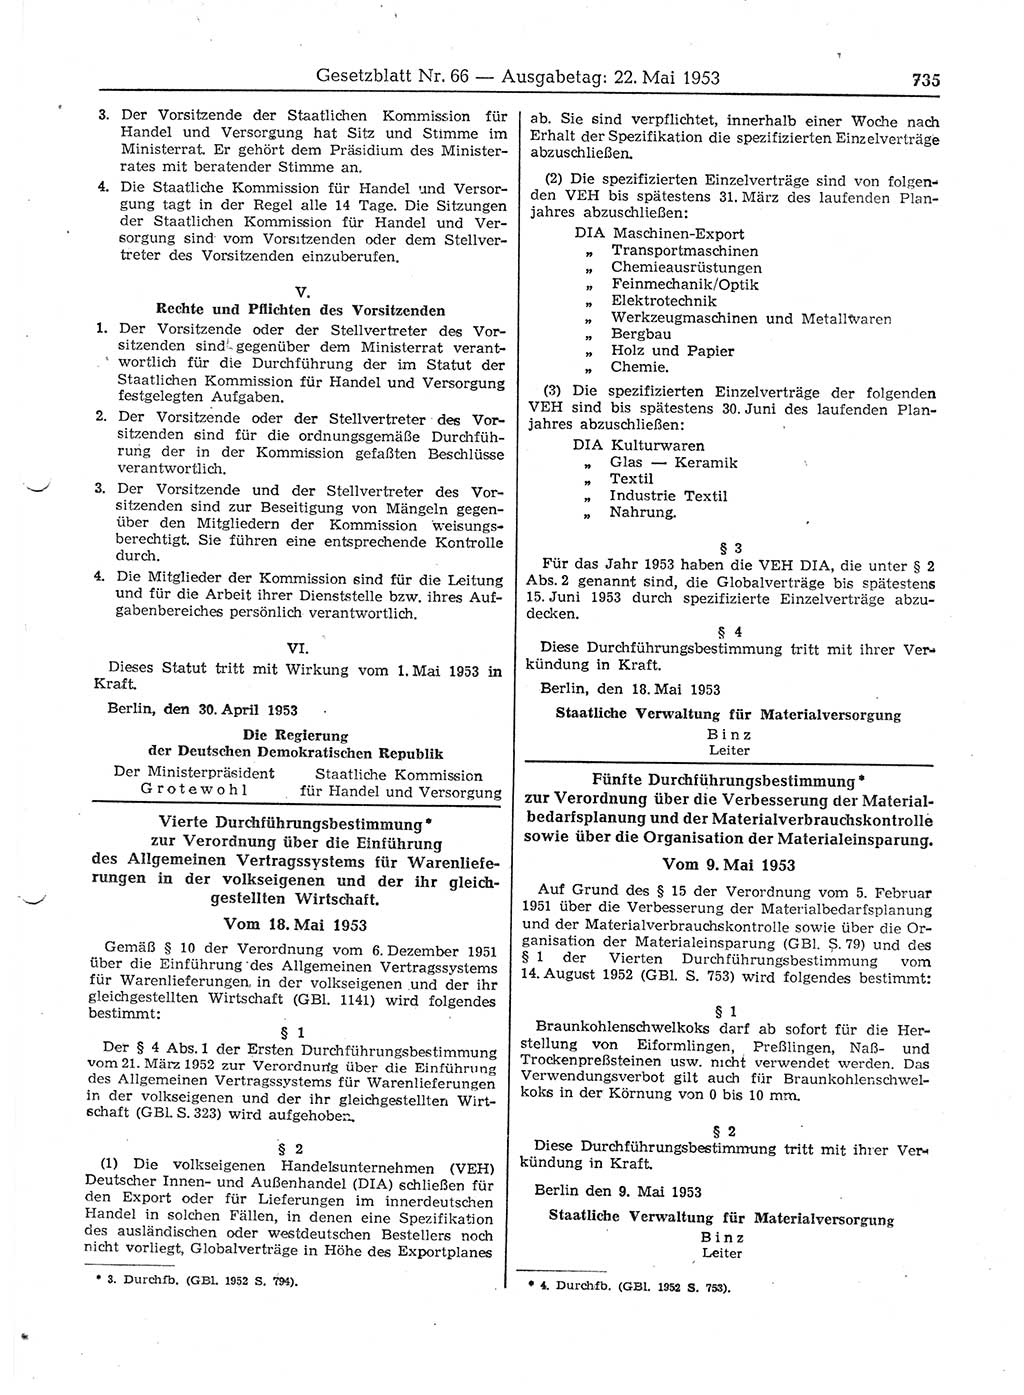 Gesetzblatt (GBl.) der Deutschen Demokratischen Republik (DDR) 1953, Seite 735 (GBl. DDR 1953, S. 735)